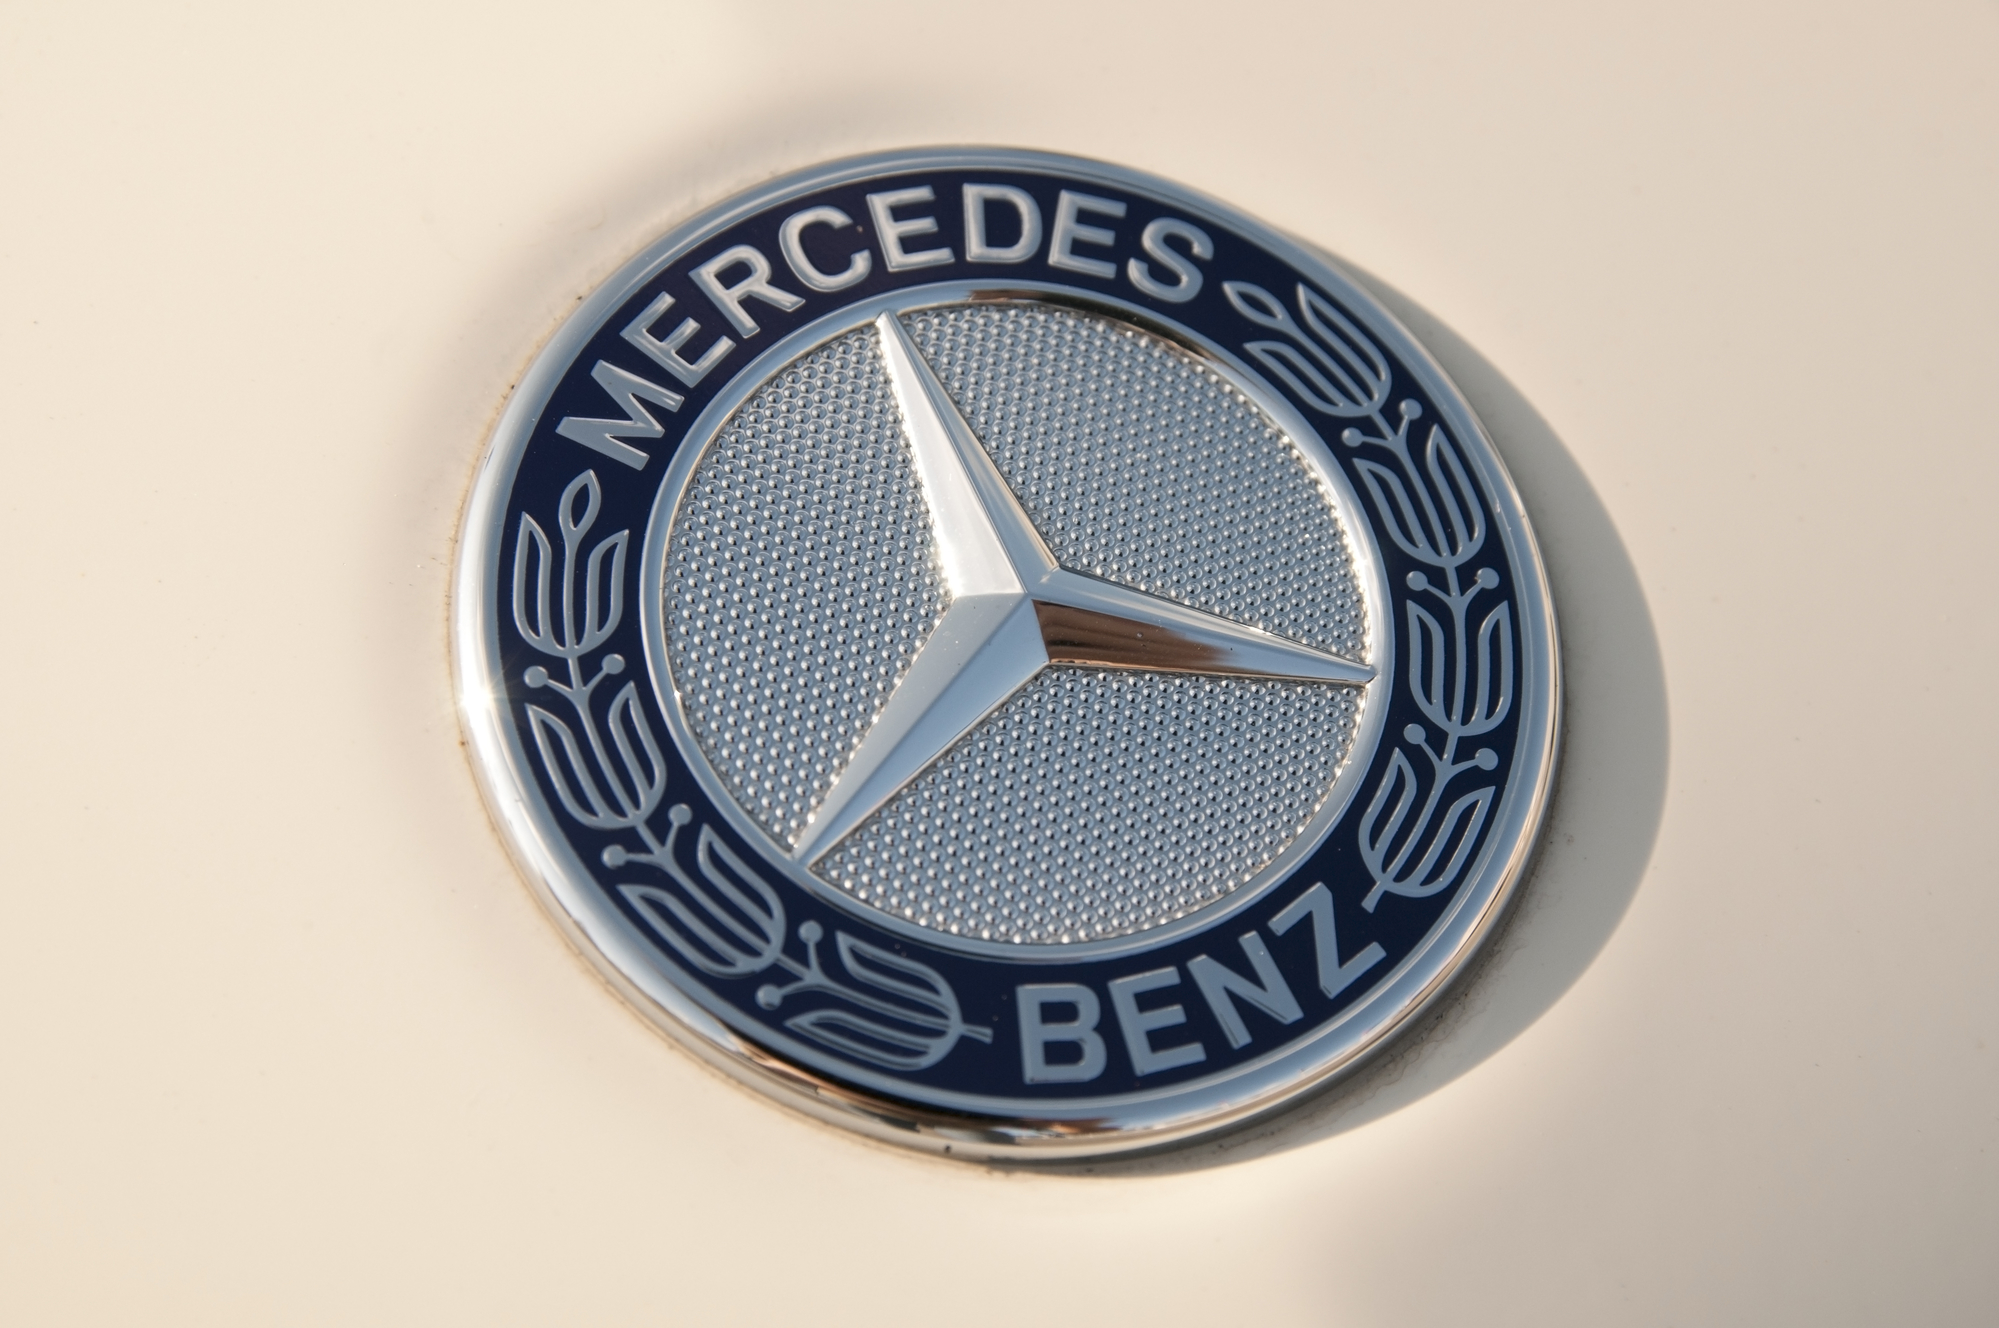 Mercedes-Benz csuklós autóbuszokat adtak át Debrecenben